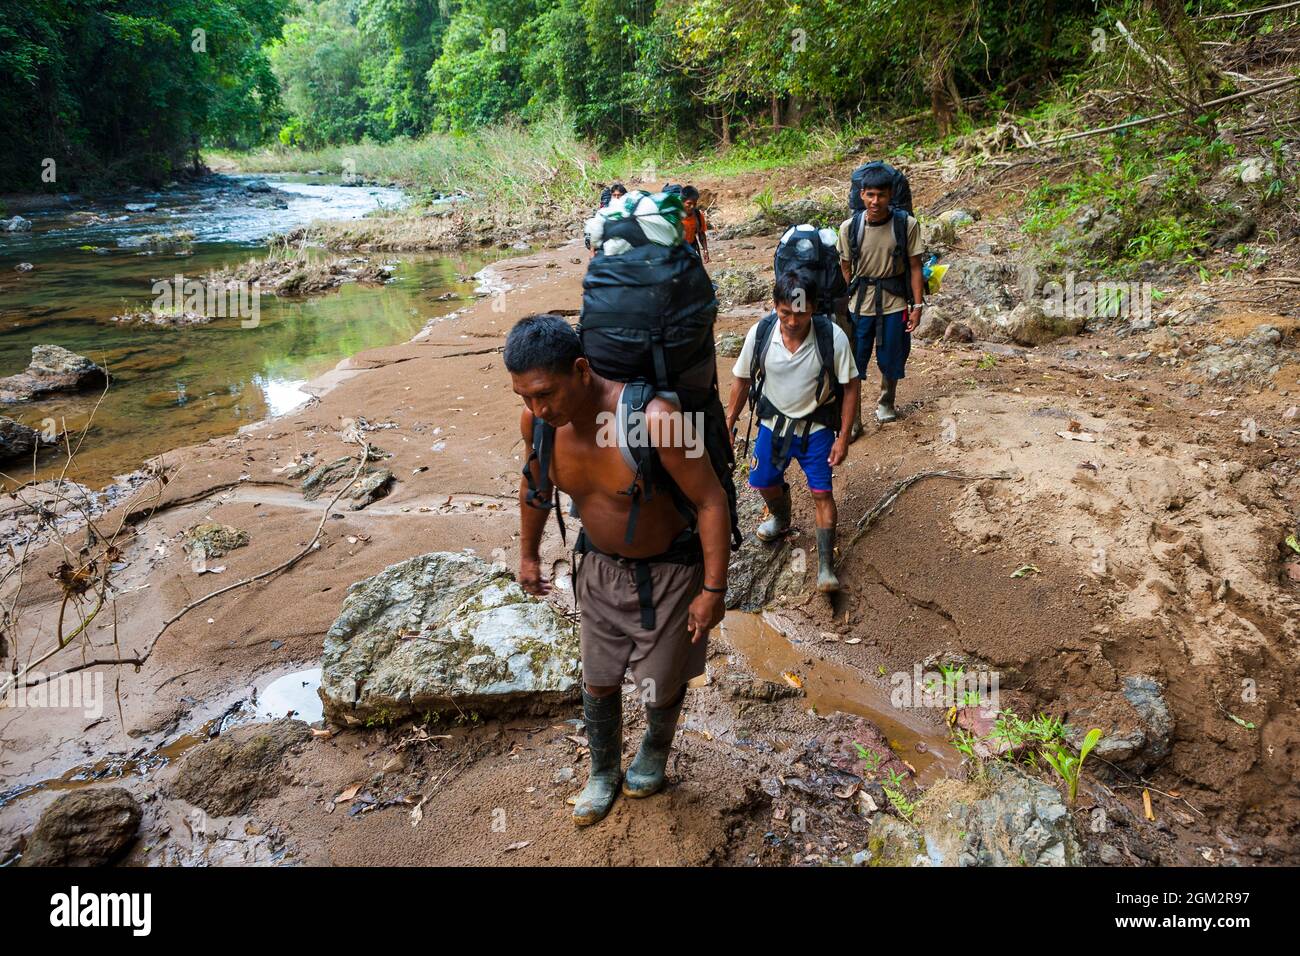 Les randonneurs indiens Embera marchent au bord d'une rivière le long de l'ancien sentier Camino Real, parc national des Chagres, République du Panama, Amérique centrale. Banque D'Images